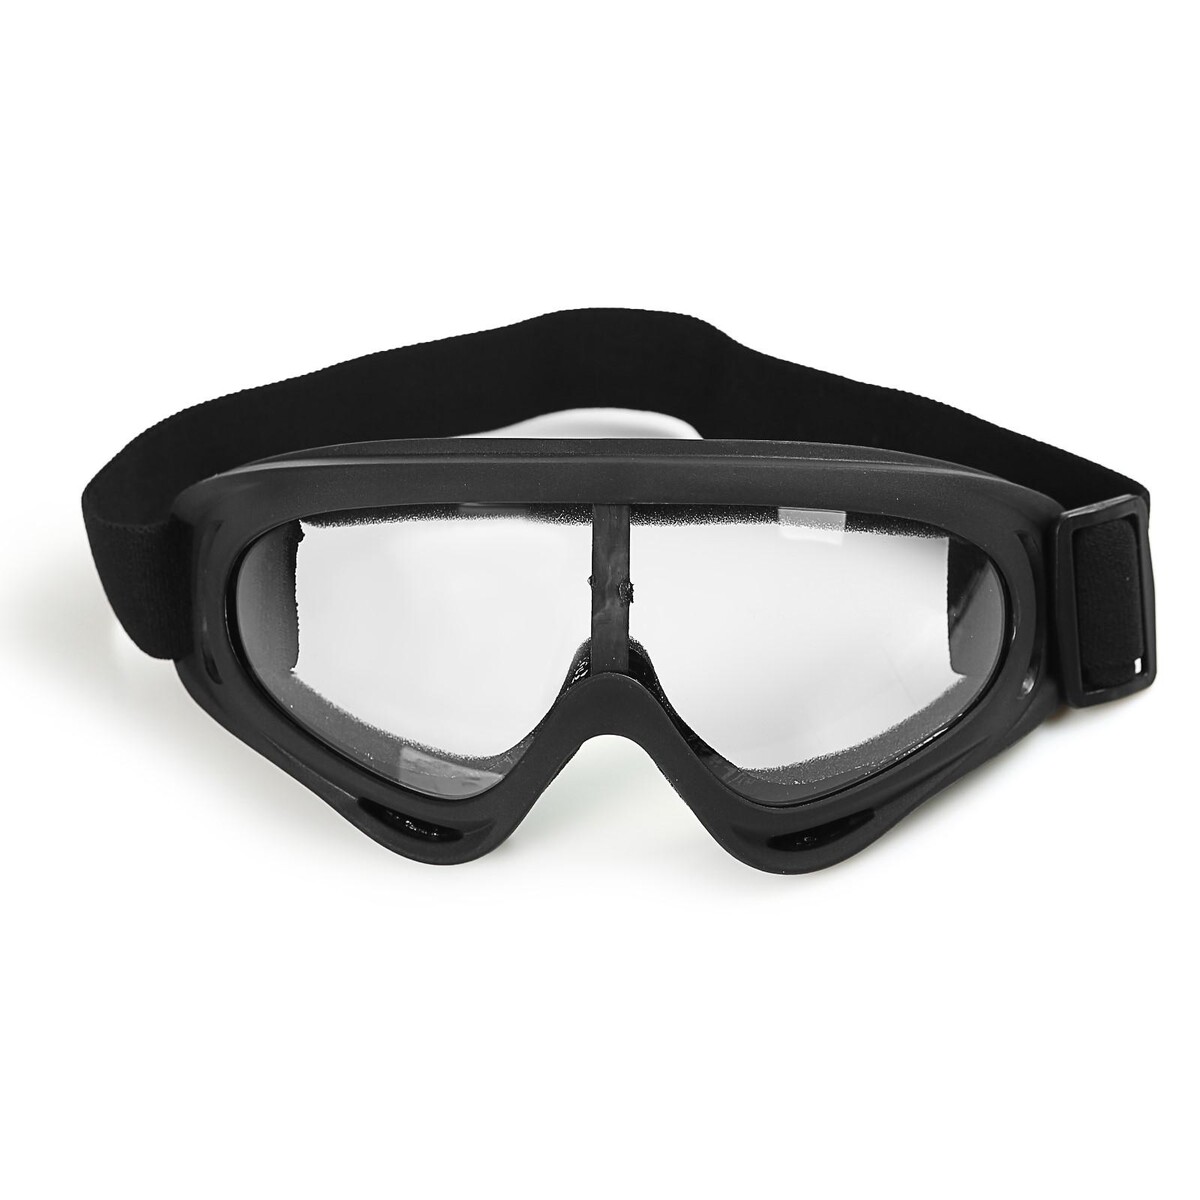 Очки для езды на мототехнике, стекло прозрачное, цвет черный очки для езды на мототехнике стекло прозрачное